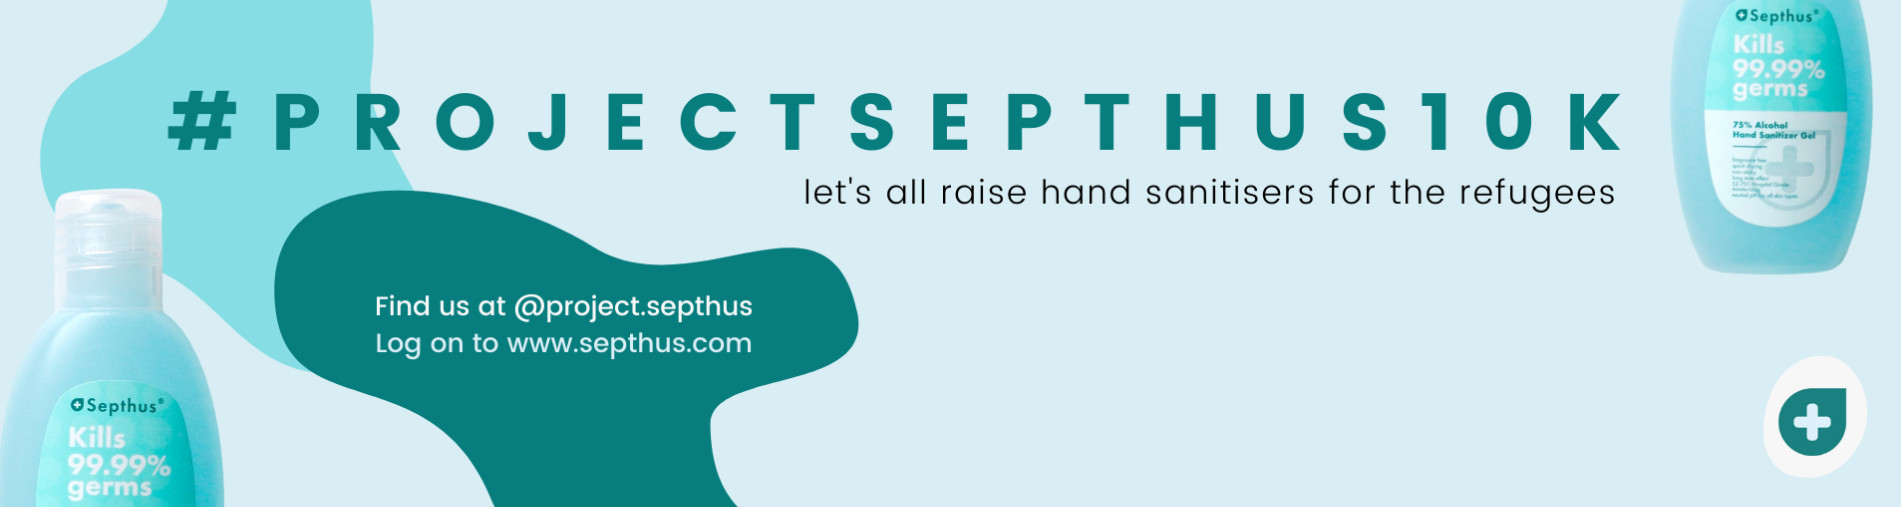 #ProjectSepthus10k